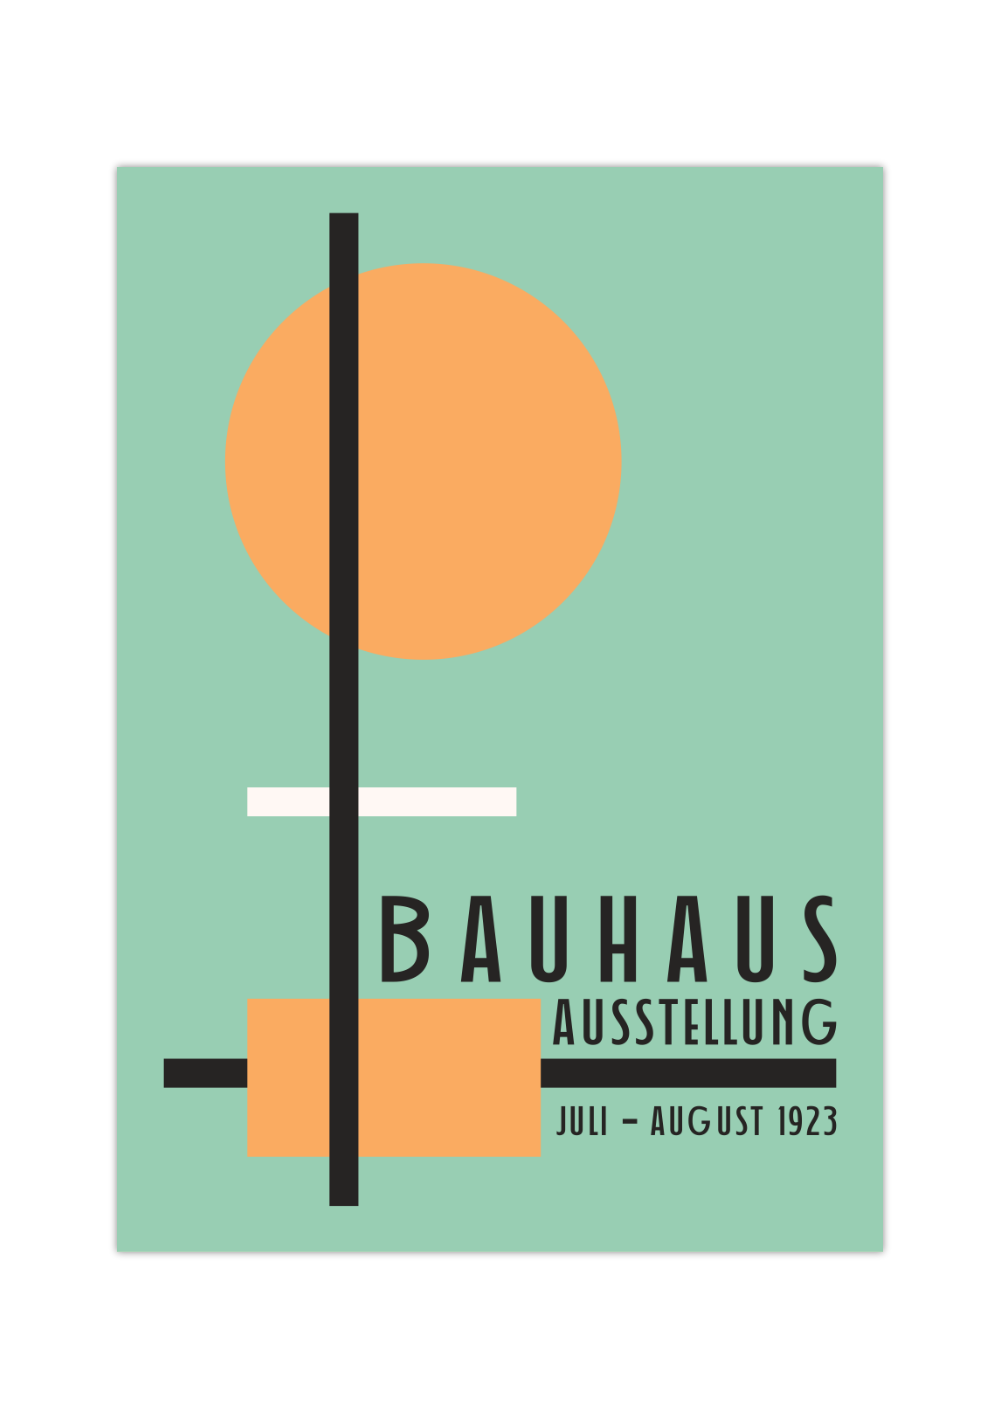 Das Bauhaus Poster zeigt dir unterschiedliche geometrische Formen in Orange, Schwarz und Weiß auf blauem Hintergrund. 